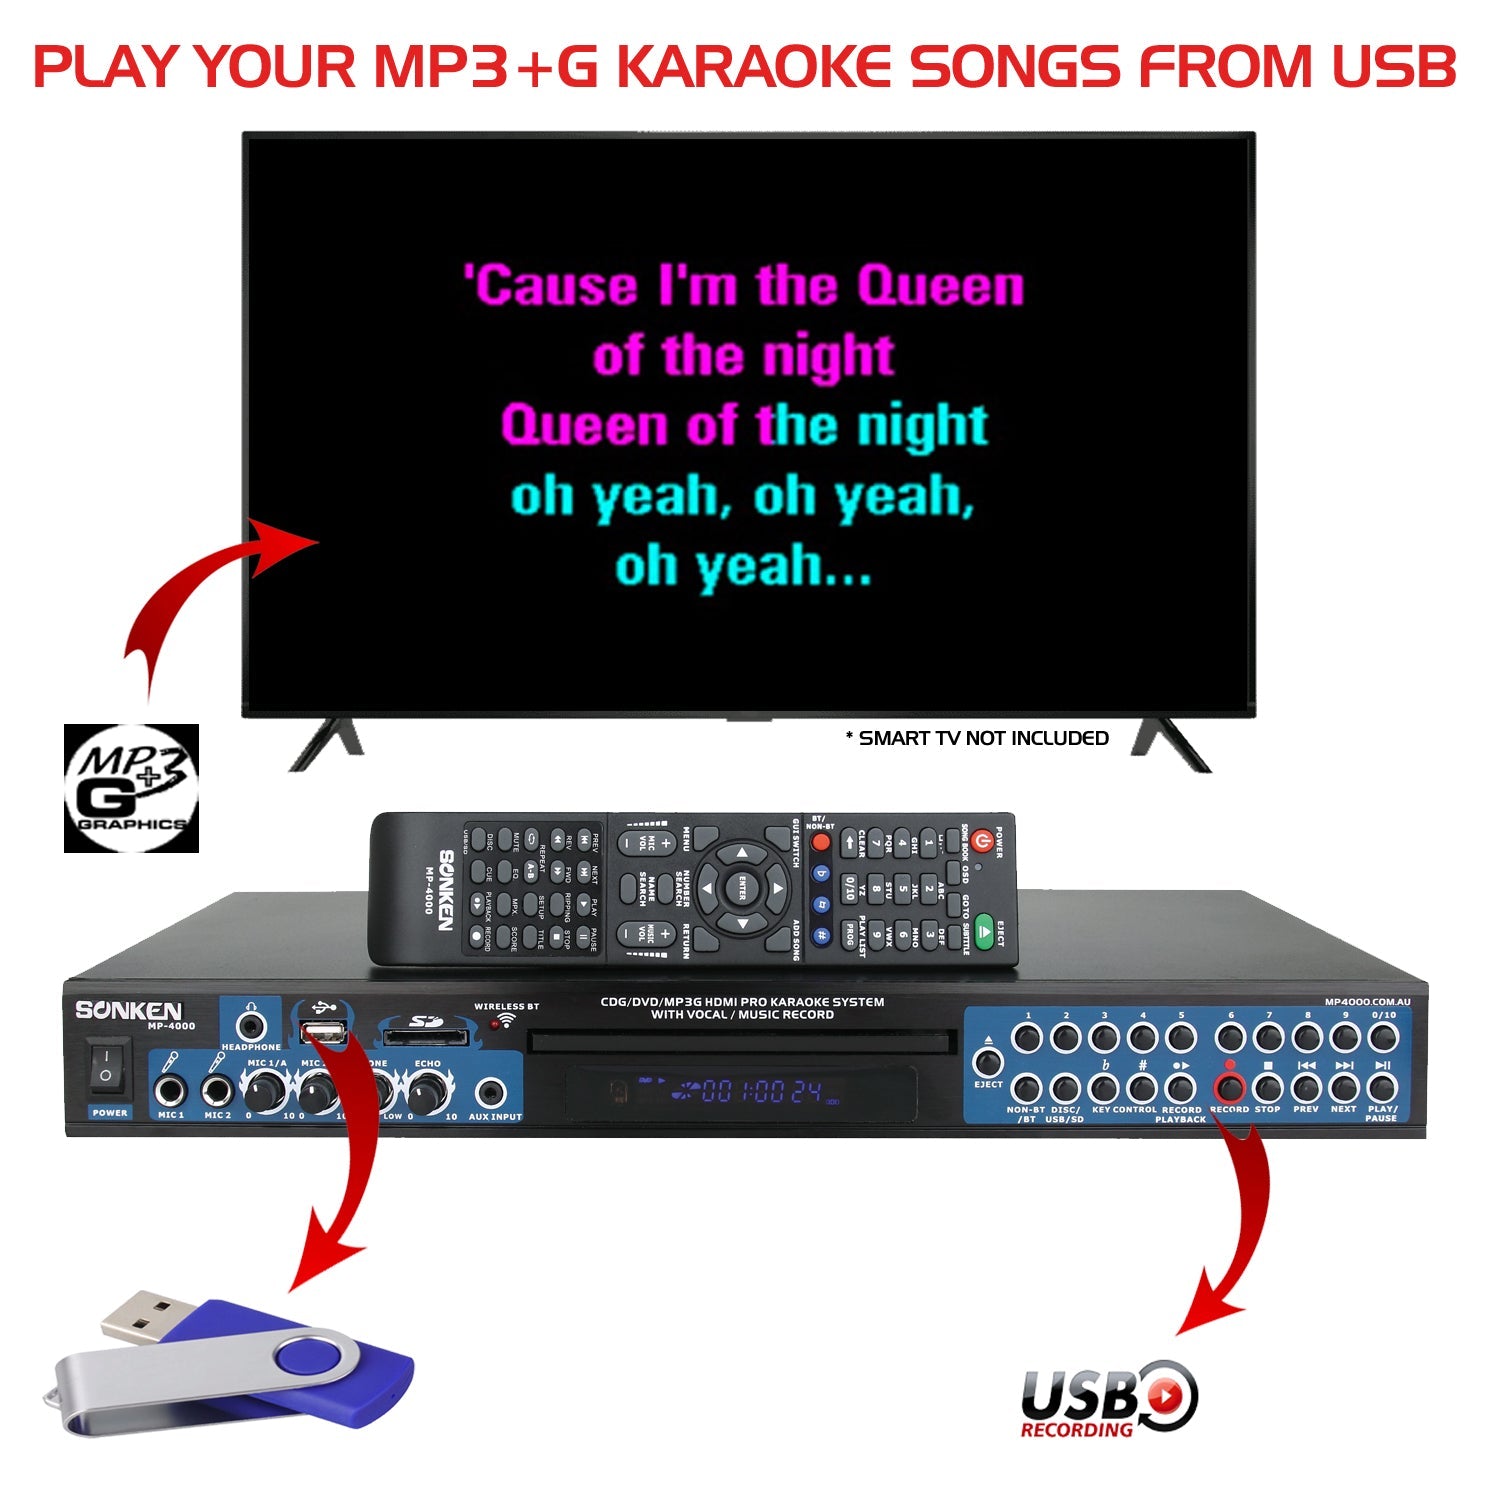 Sonken MP4000 Pro Karaoke Machine + 420 Songs from the 70's & 80's + 2 Wireless Microphones - Karaoke Home Entertainment